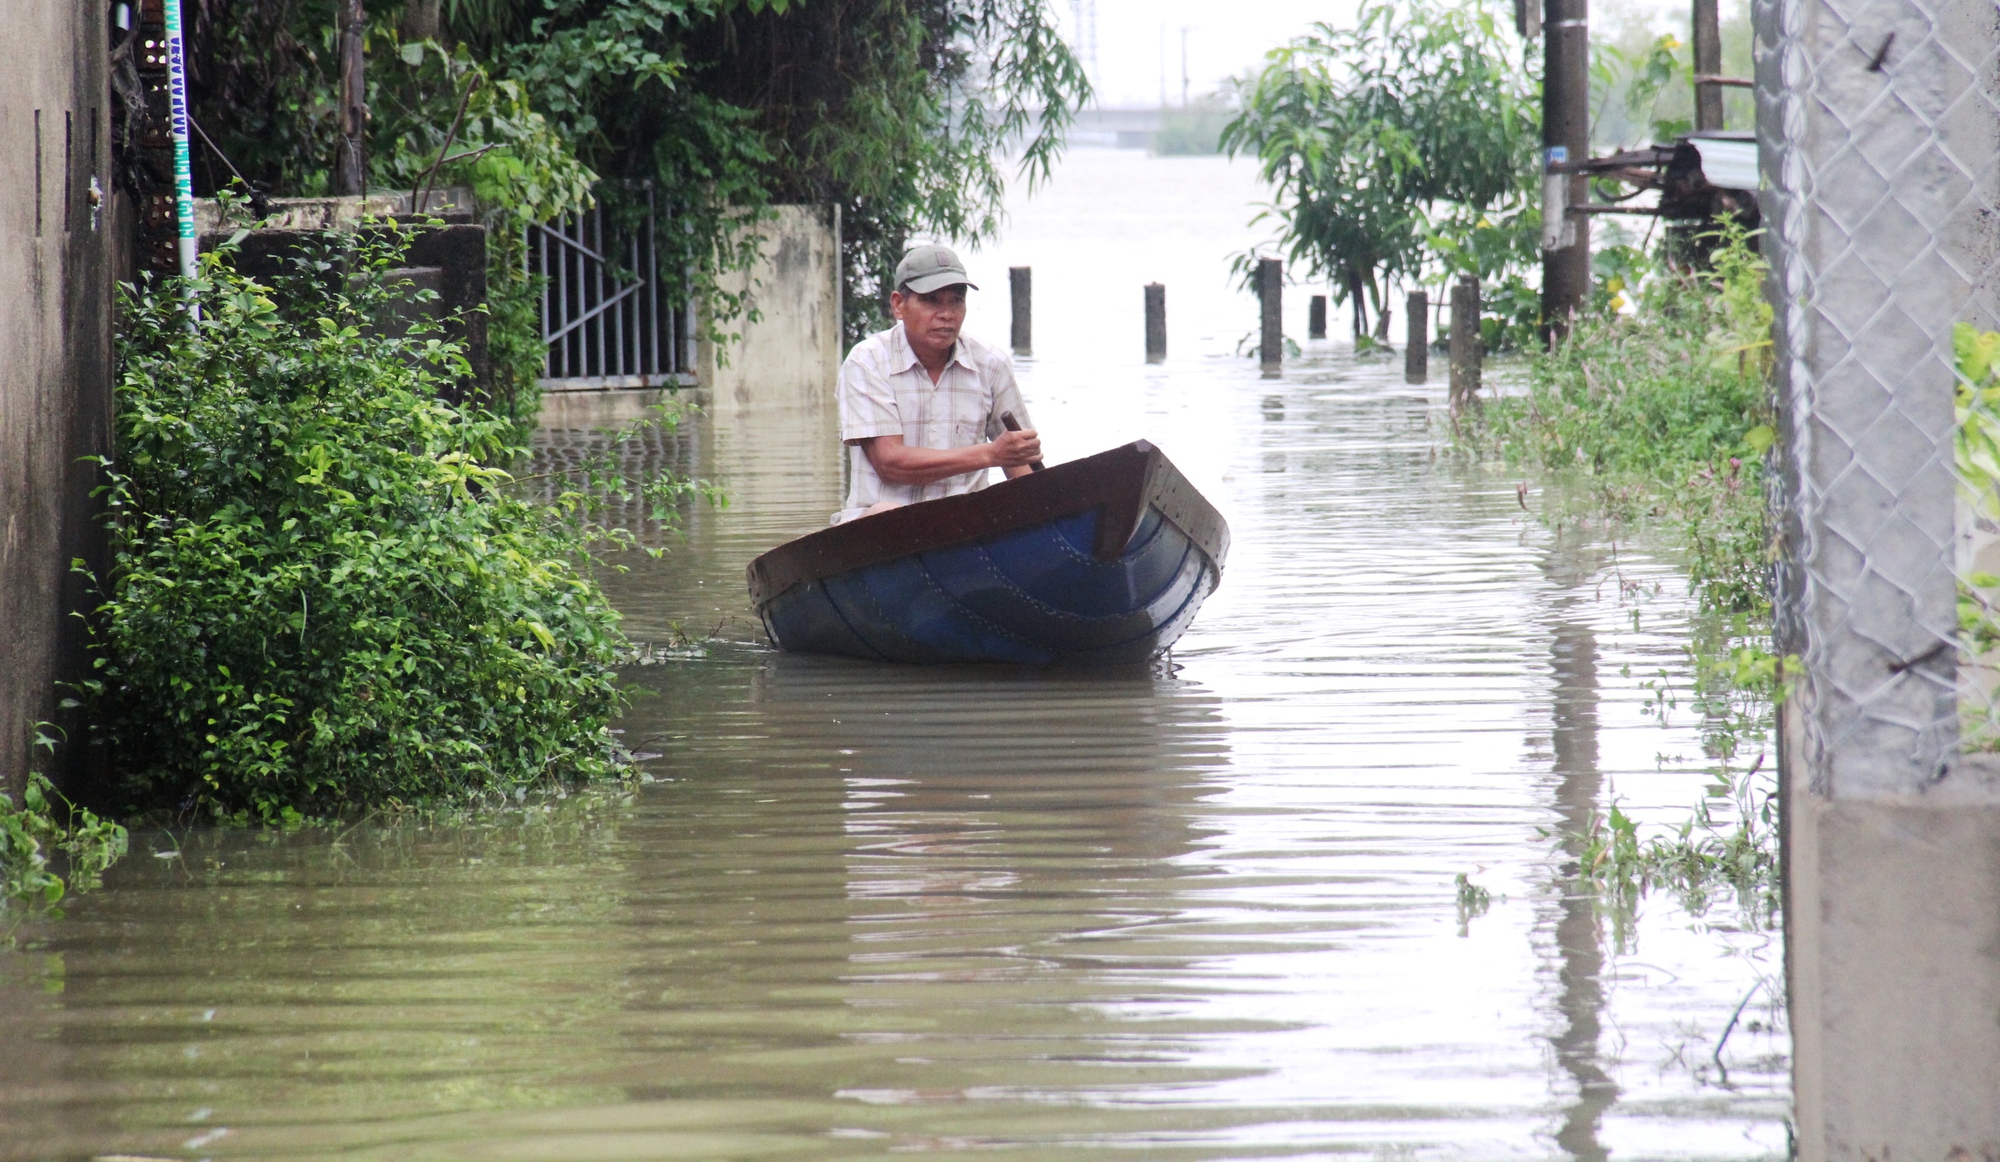 Quảng Nam: Nhiều nơi chìm trong biển nước, dân dùng ghe đi lại - Ảnh 7.